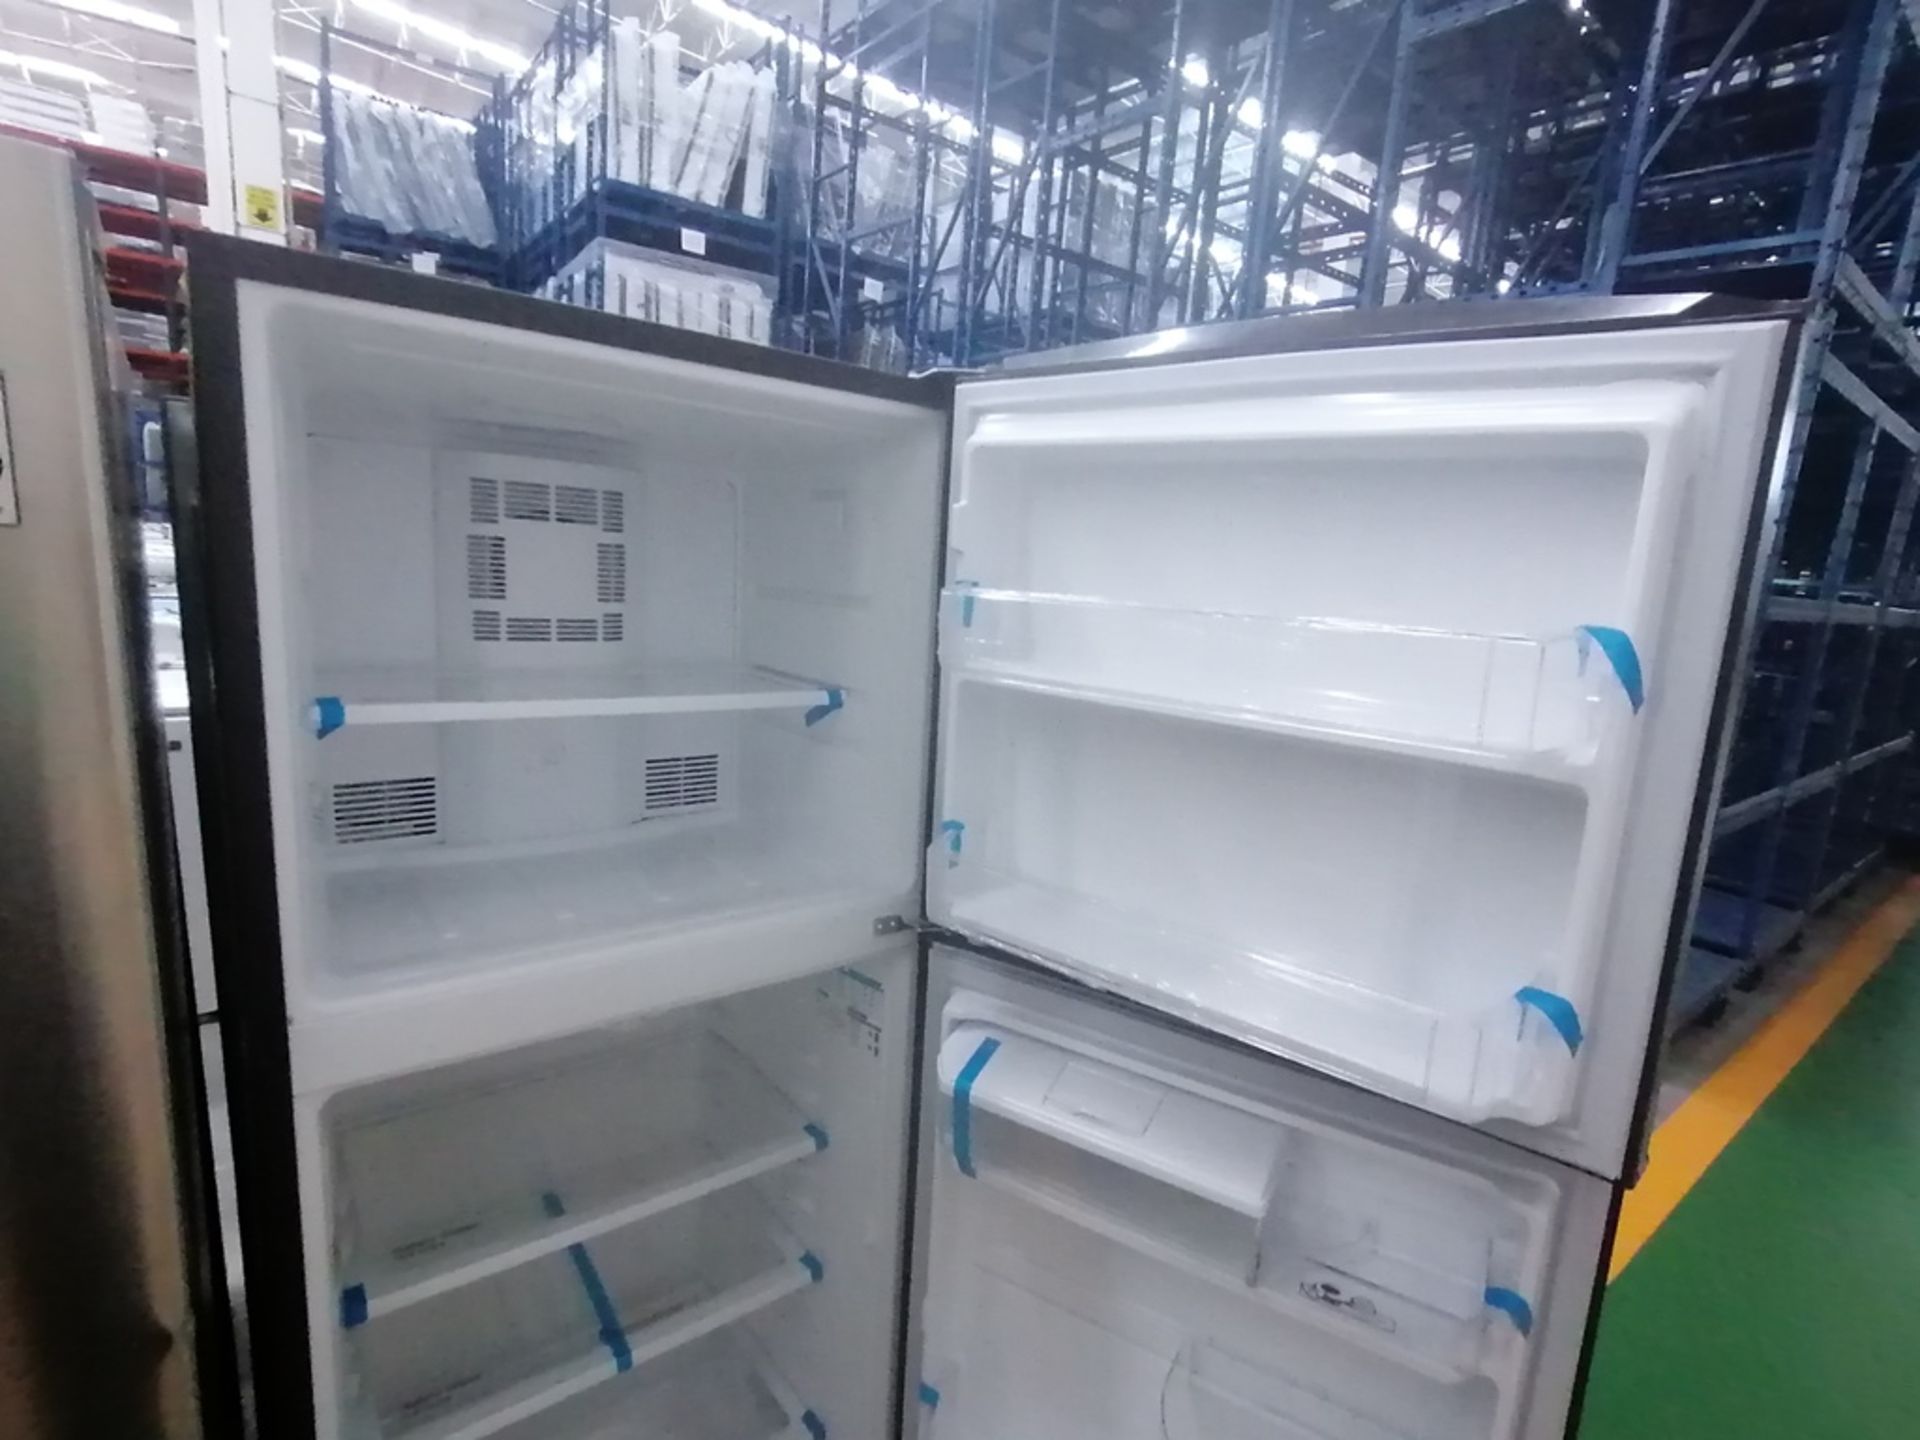 Lote de 2 refrigeradores incluye: 1 Refrigerador con dispensador de agua, Marca Mabe, Modelo RME360 - Image 7 of 15